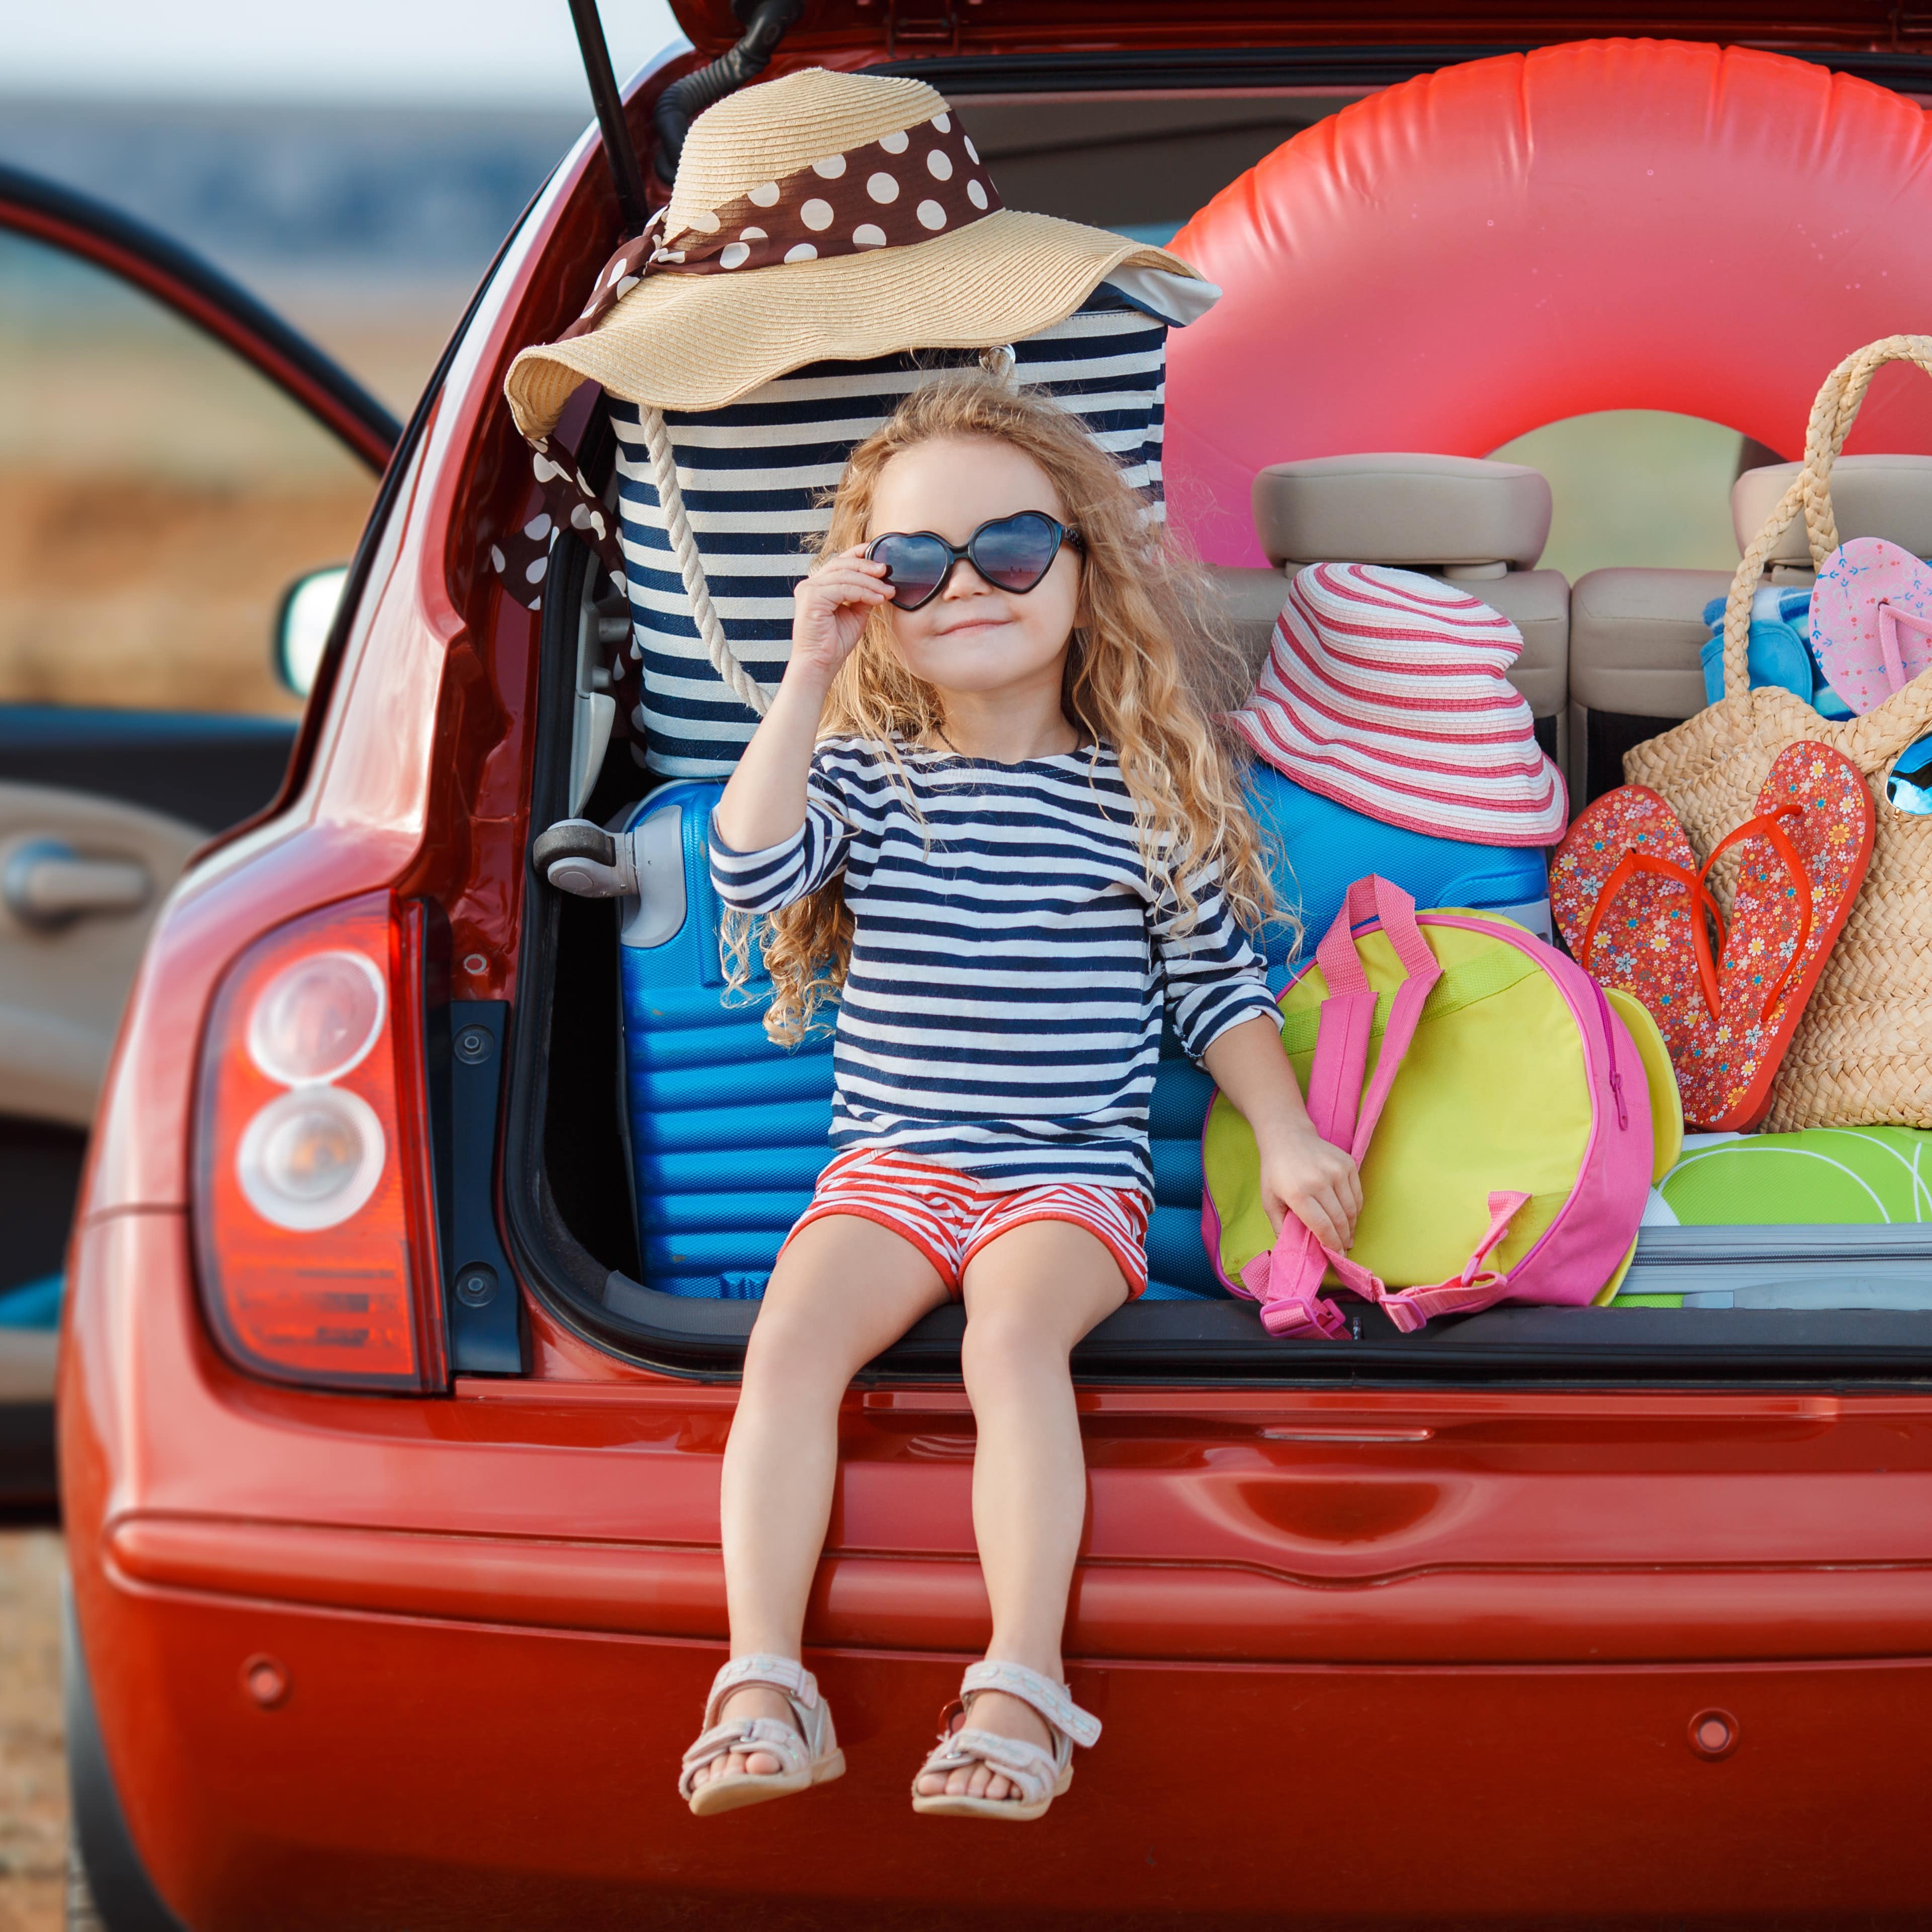 Ein kleines Mädchen in gestreiften Sommersachen sitze in einem vollgepackten Kofferraum eines roten Autos.